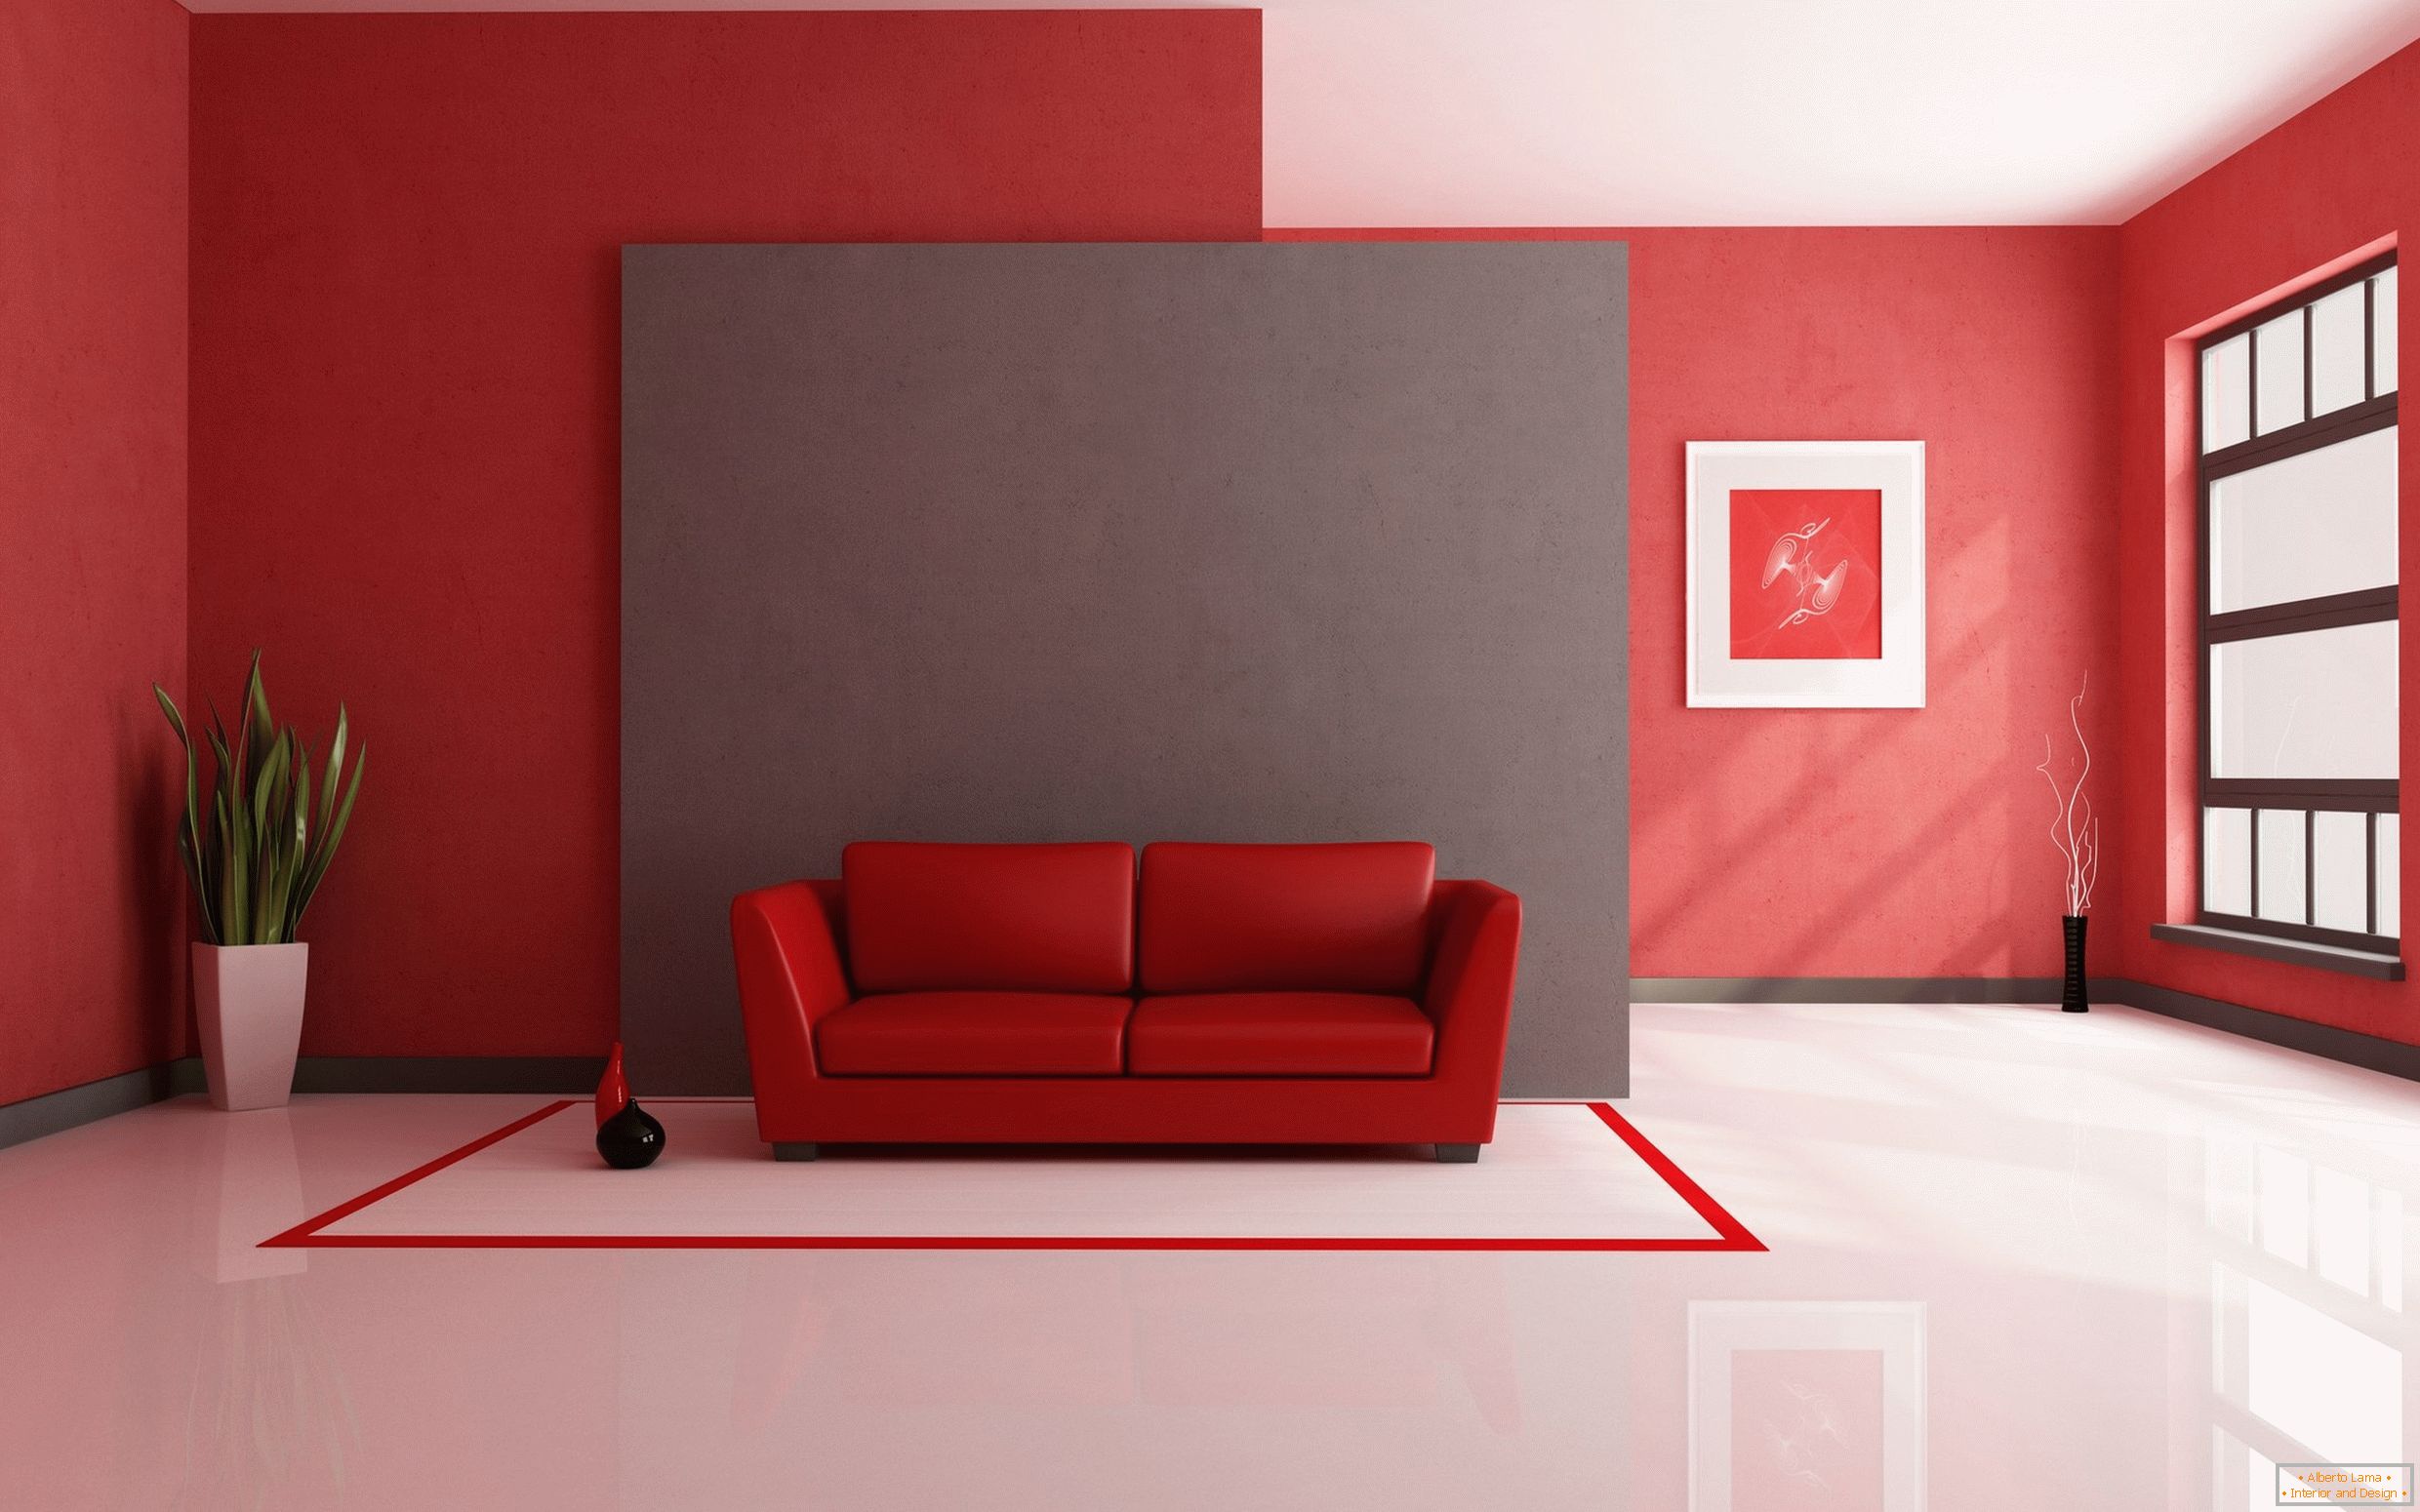 Biela podlaha v kombinácii s červenými dokončovacími materiálmi a interiérovými prvkami